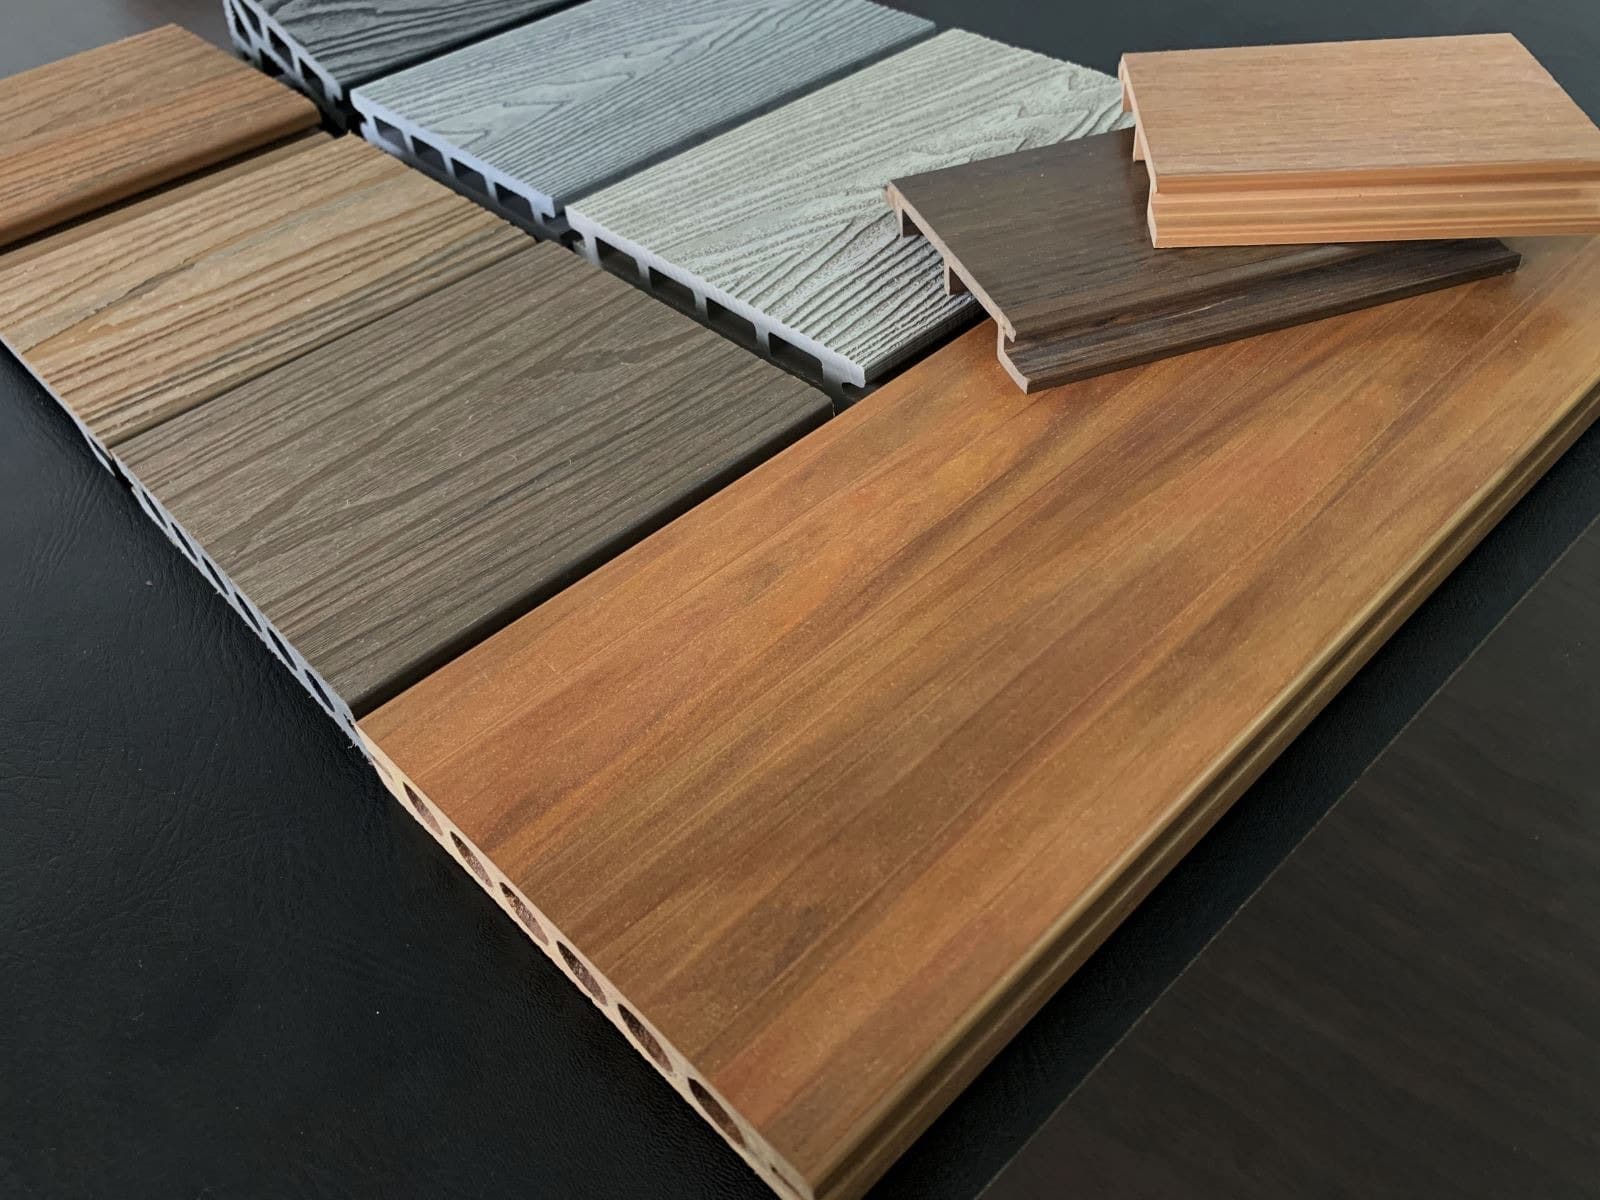 Lựa chọn Sàn Xinh là đơn vị uy tín cung cấp sàn gỗ nhựa Hwood